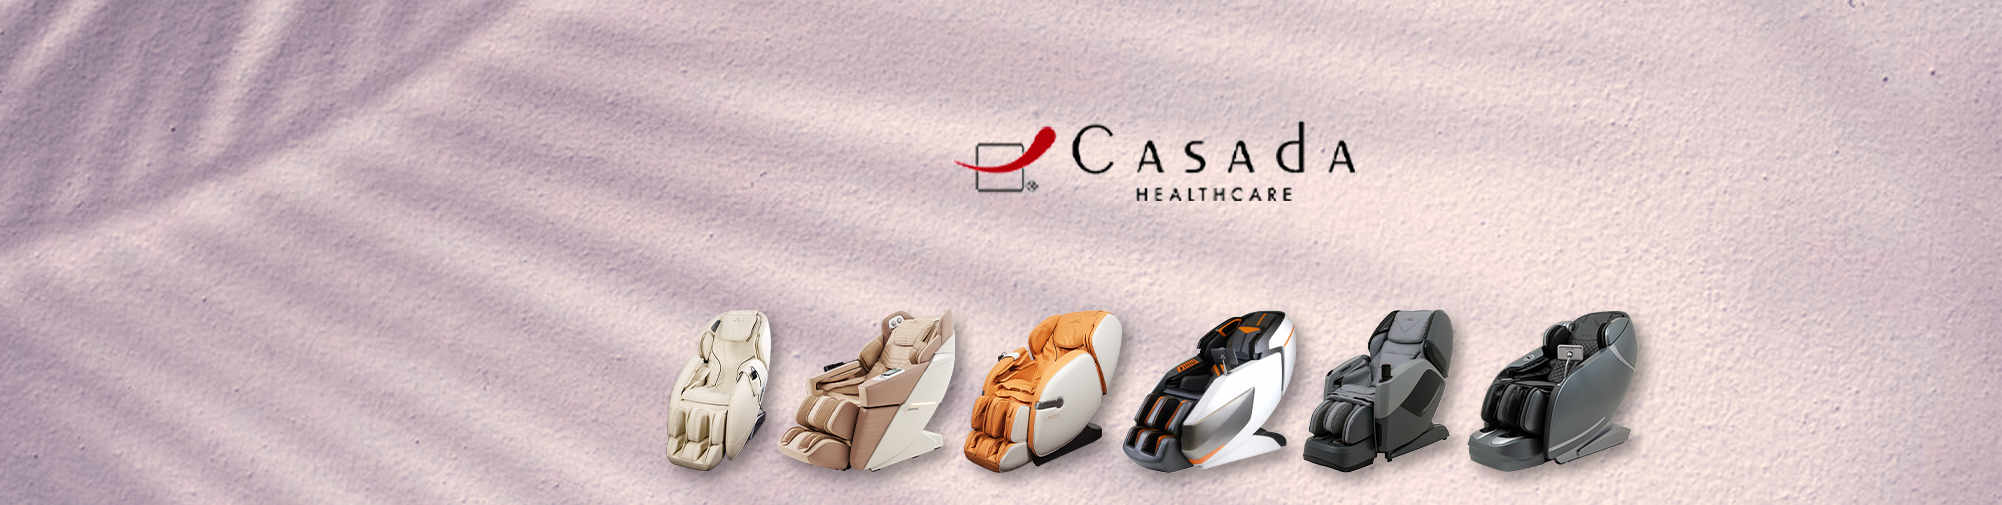 Casada - đối tác đáng tin cậy | Thế giới ghế massage